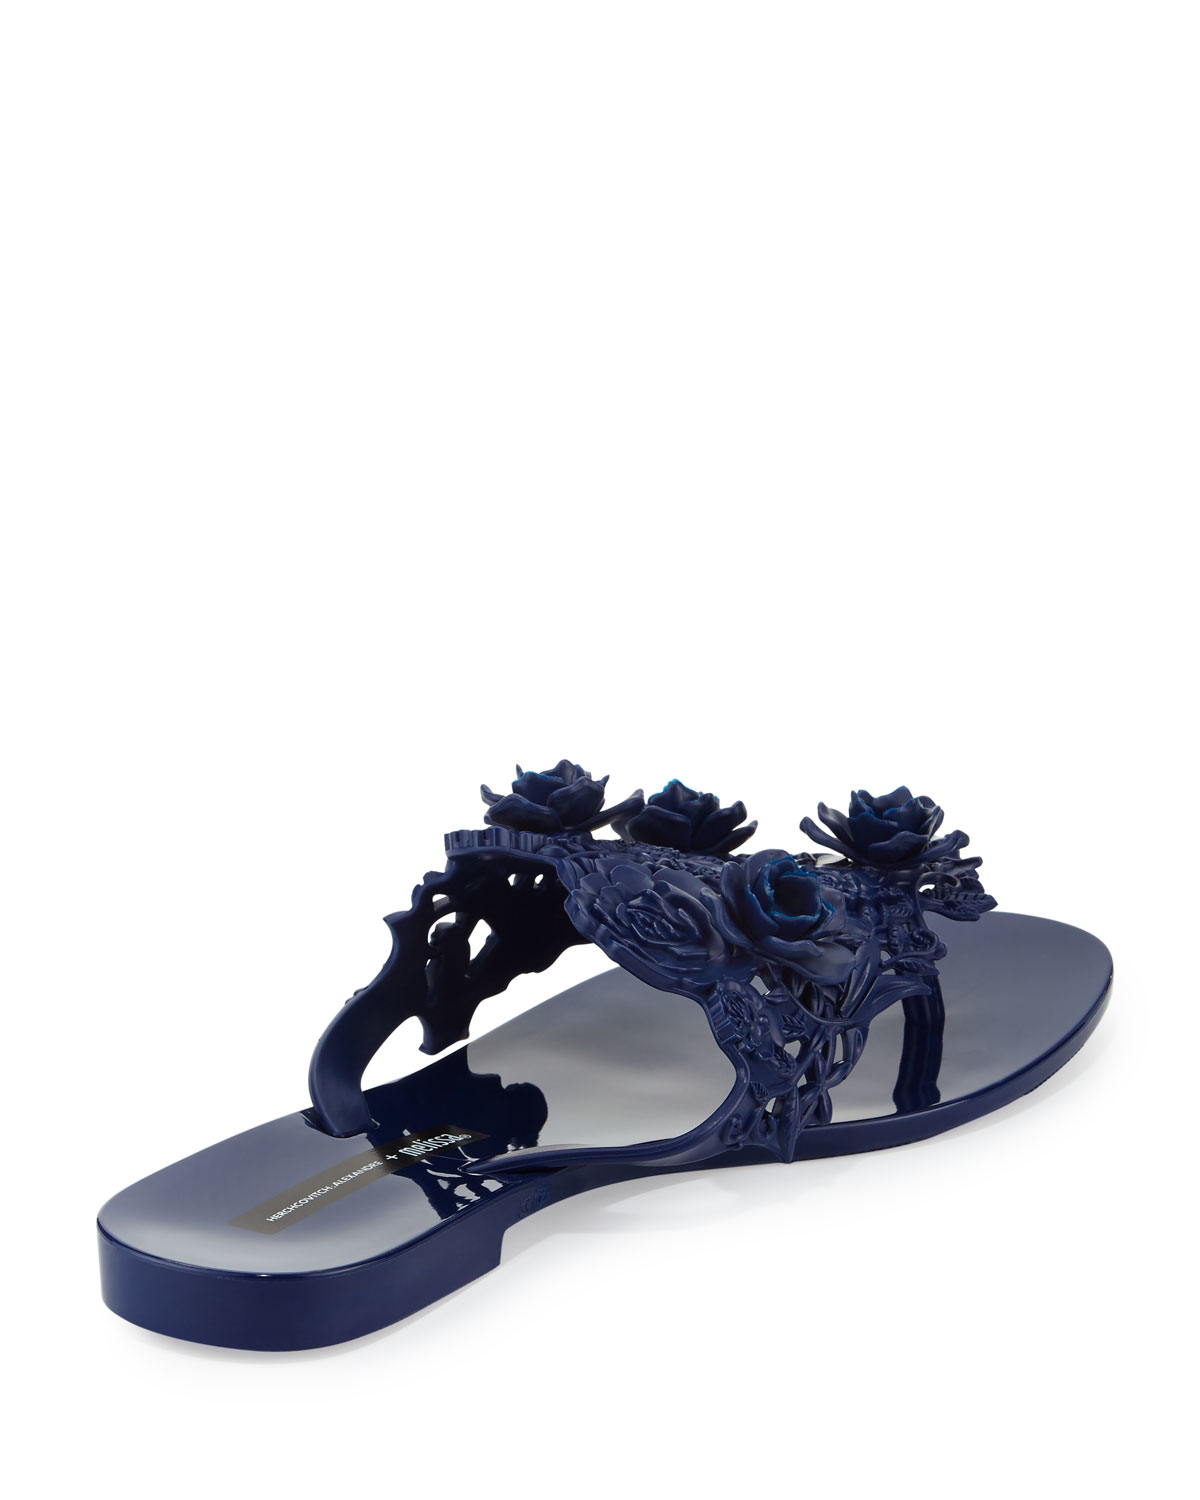 Cute Navy Blue Heels - Floral Heels - Platform Heels - $38.00